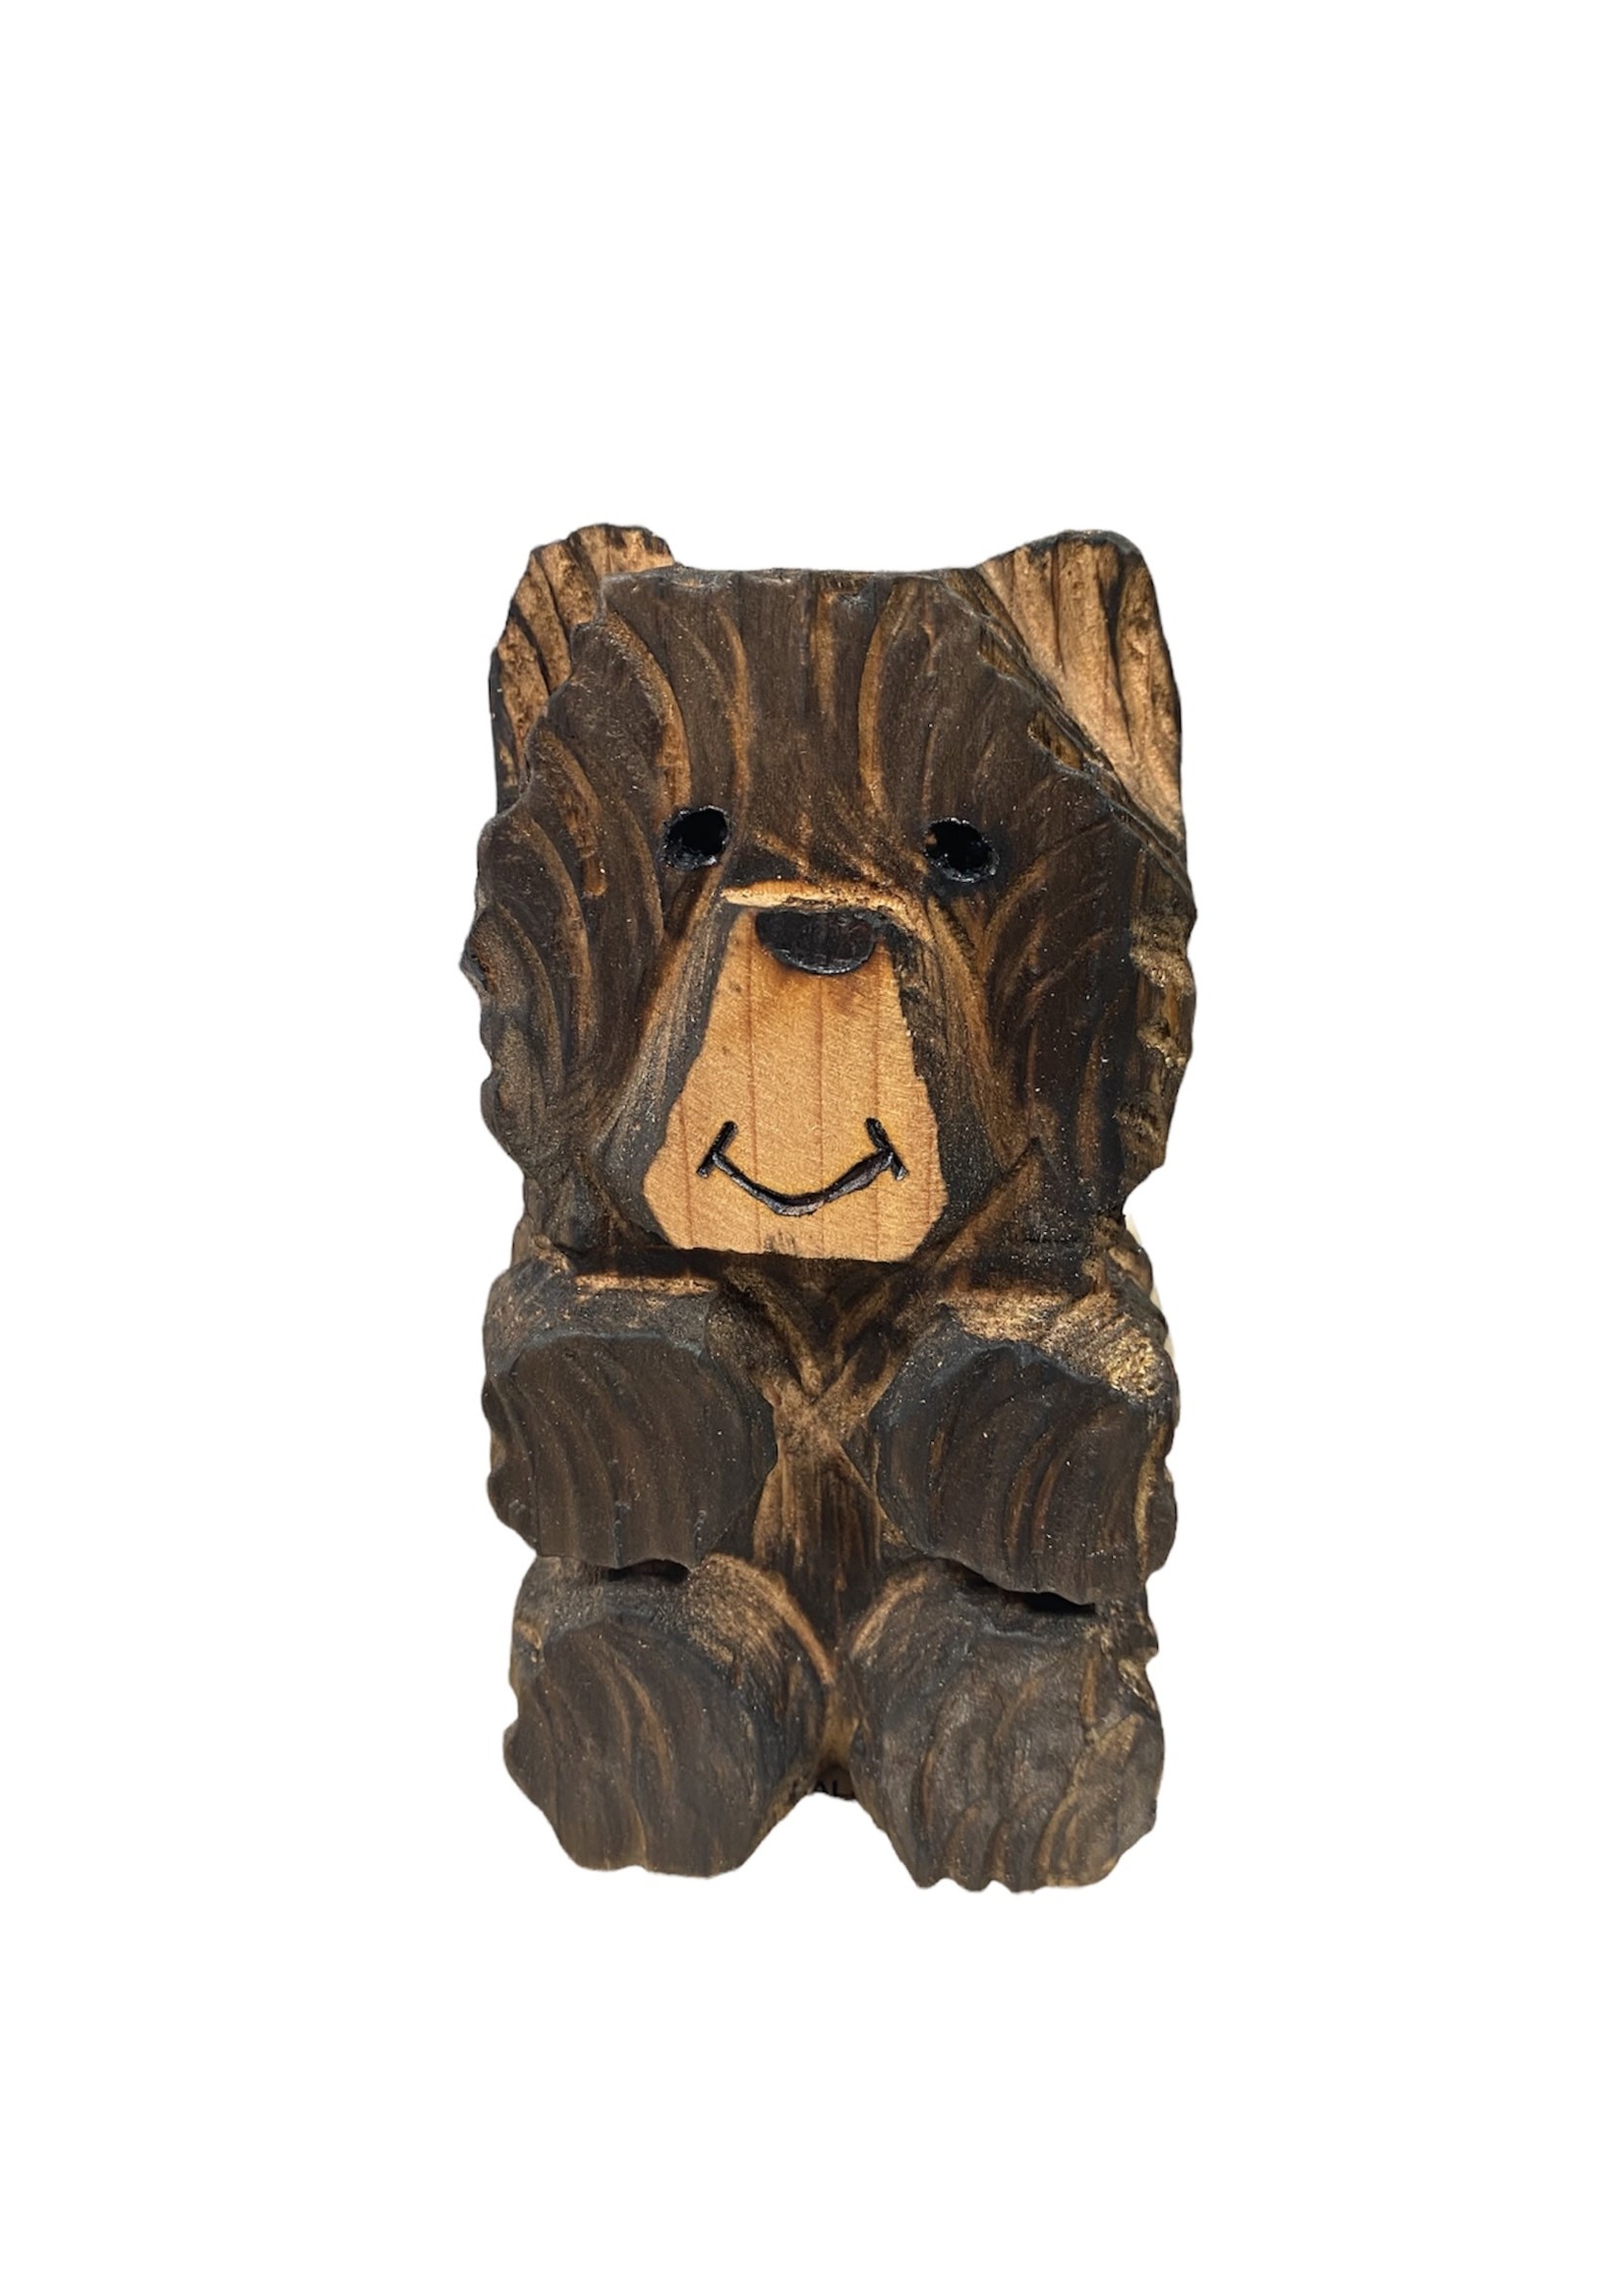 6" Redwood Bear